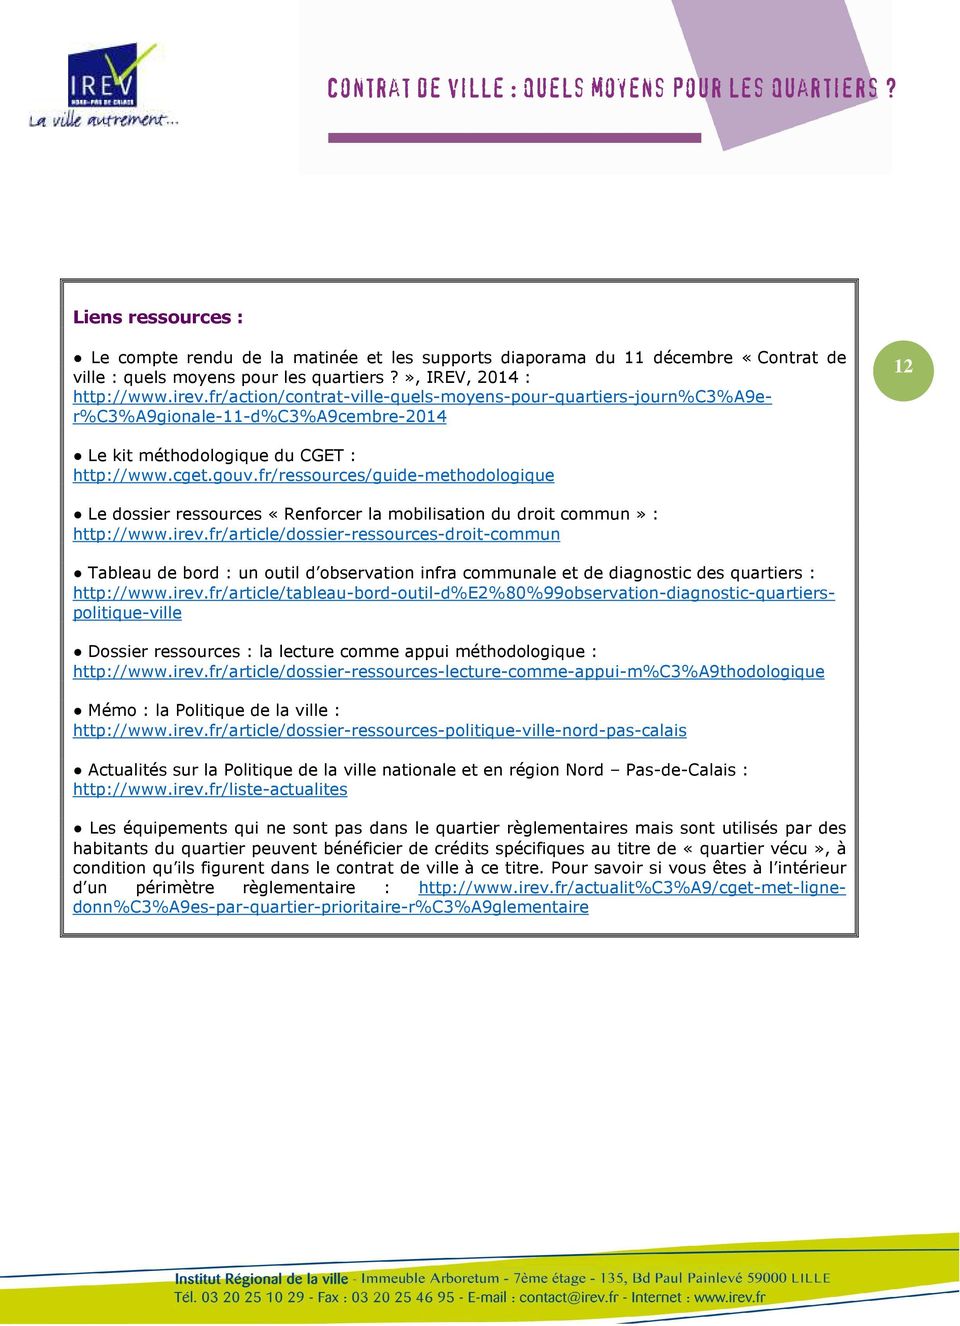 fr/ressources/guide-methodologique Le dossier ressources «Renforcer la mobilisation du droit commun» : http://www.irev.